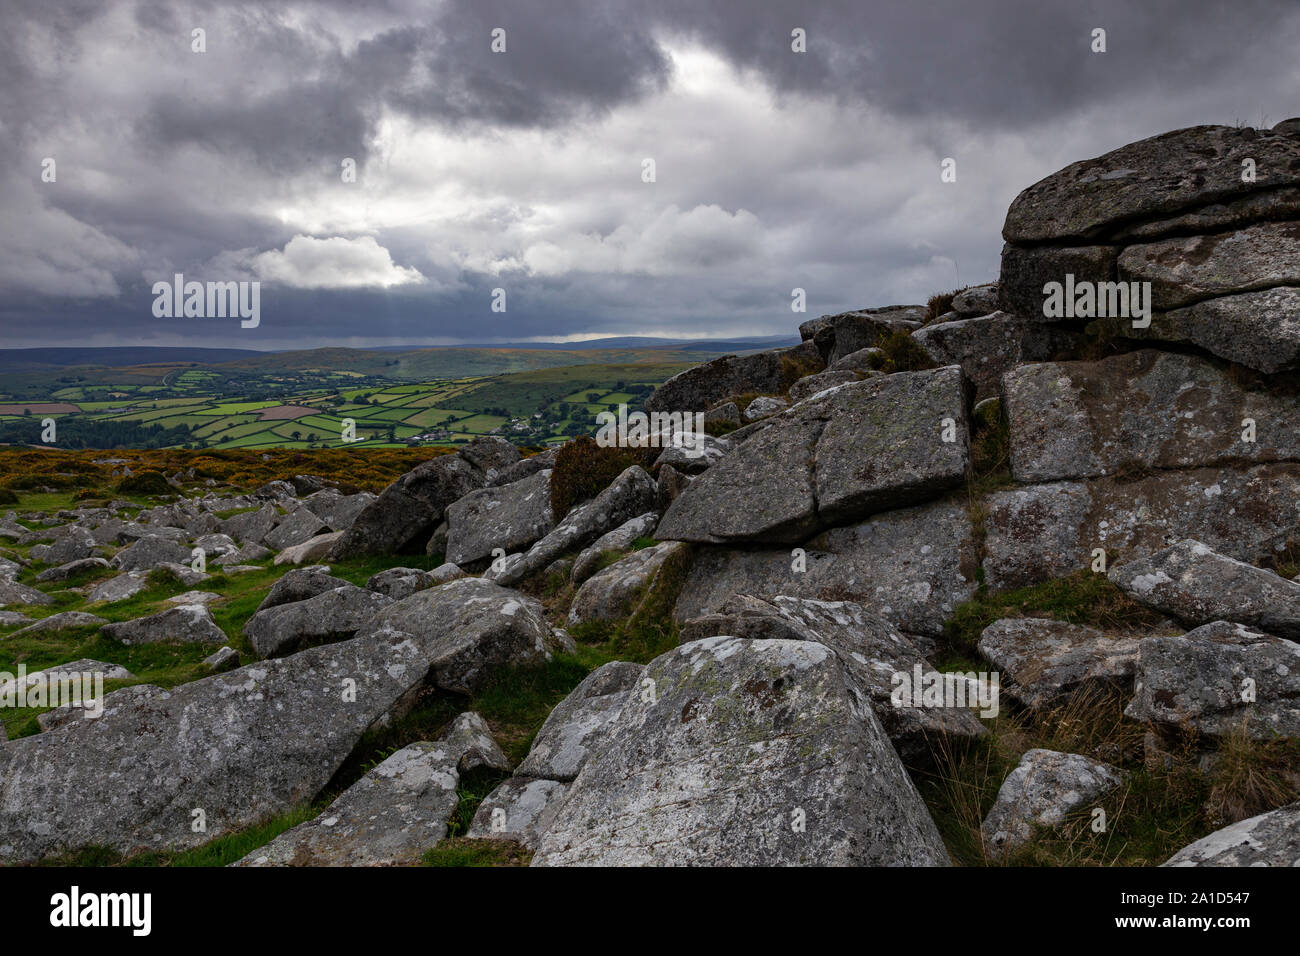 Storm clouds over granite tor on Dartmoor, Devon, England Stock Photo